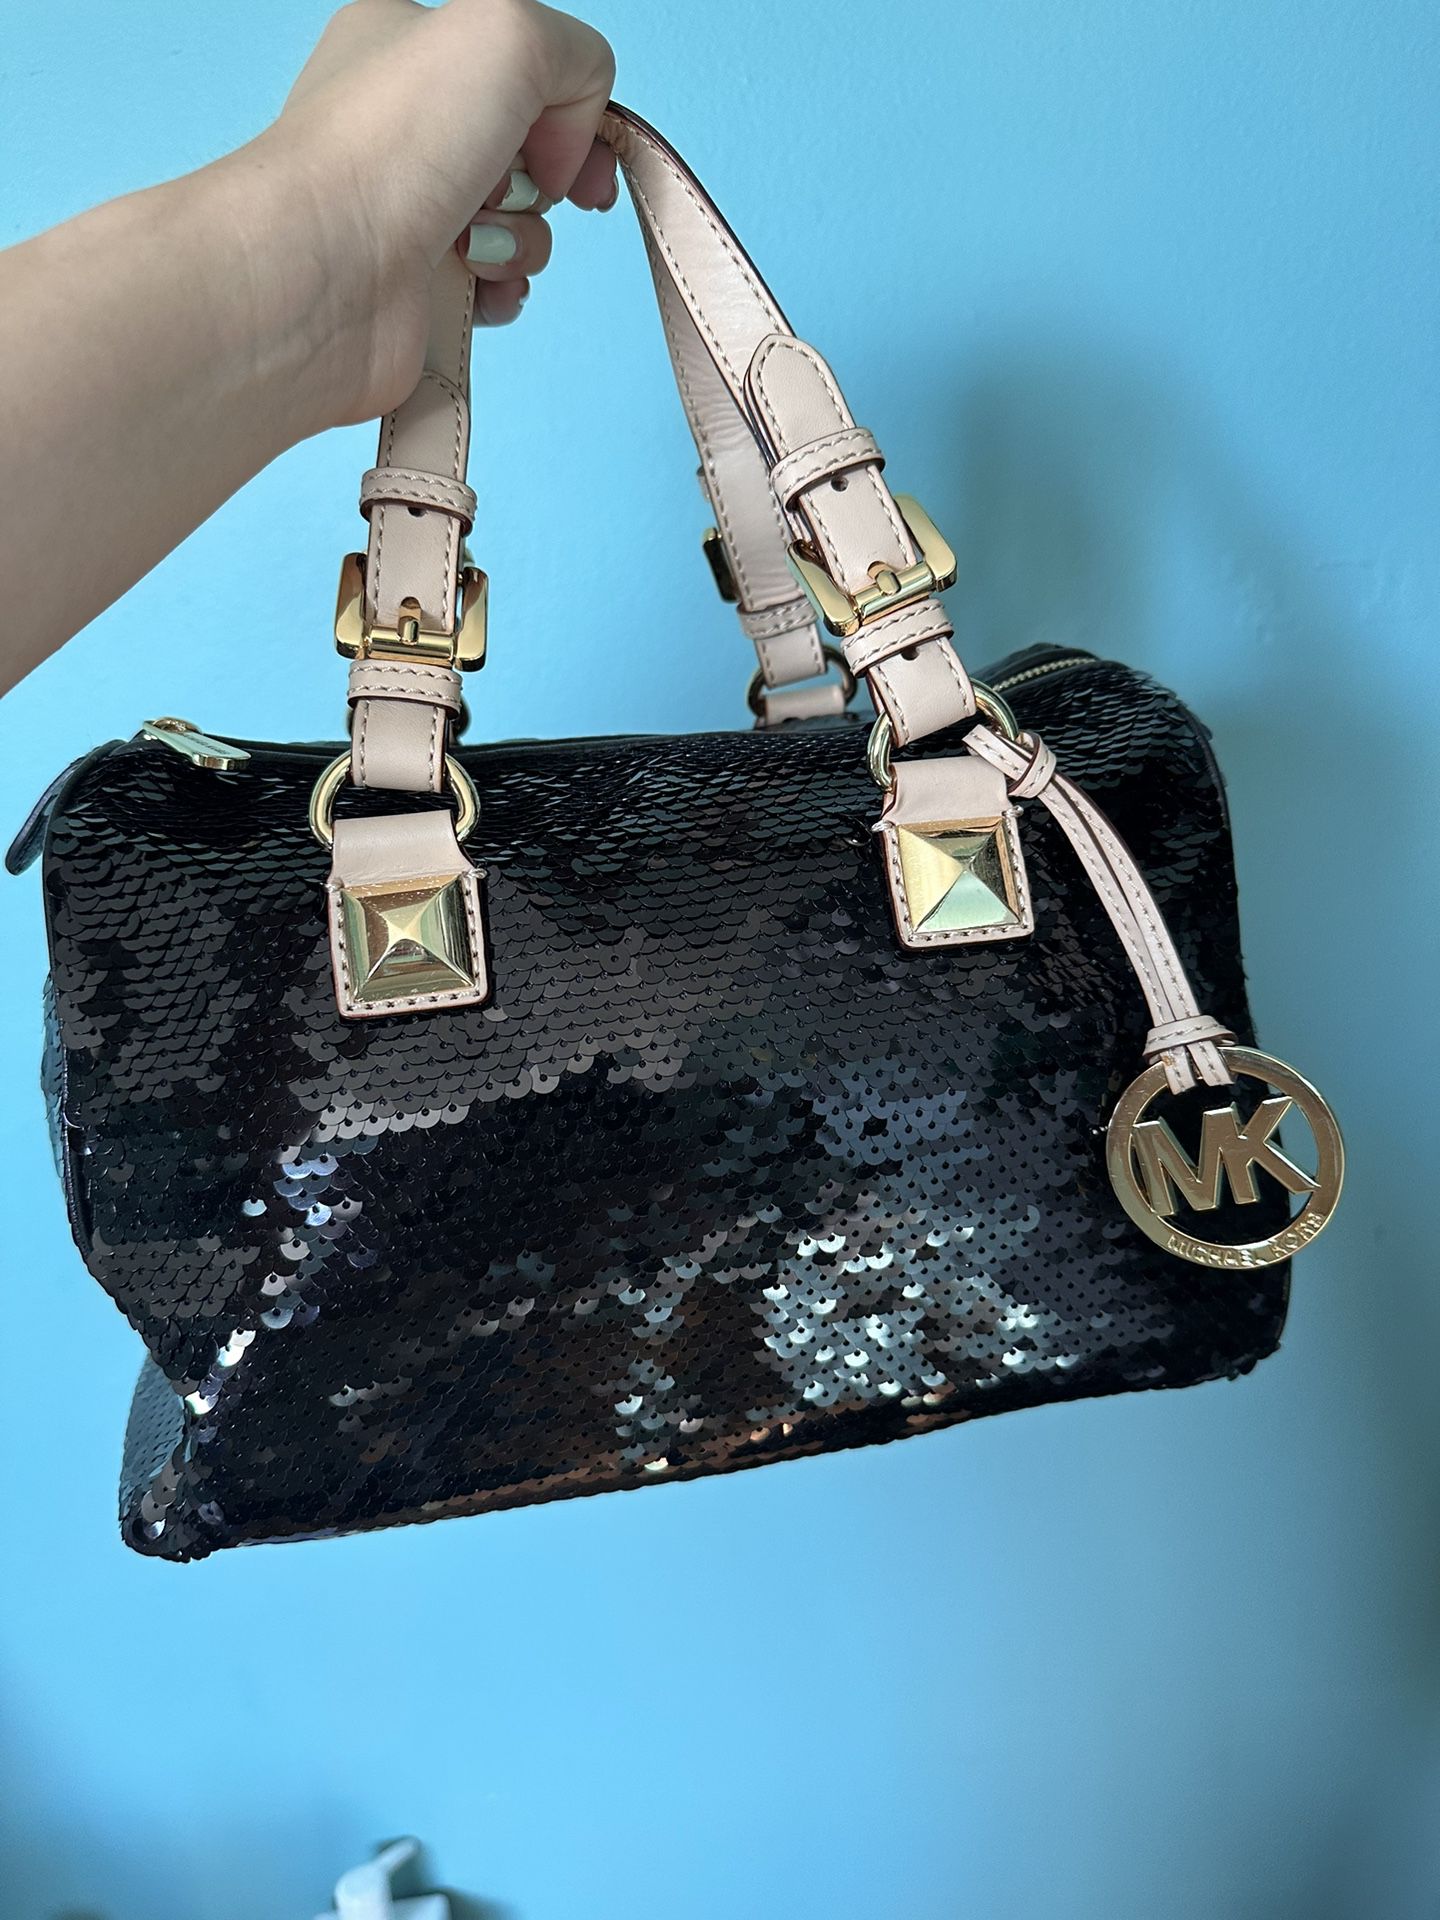 Michael Kors Sequin Handbag for Sale in City Of Industry, CA - OfferUp